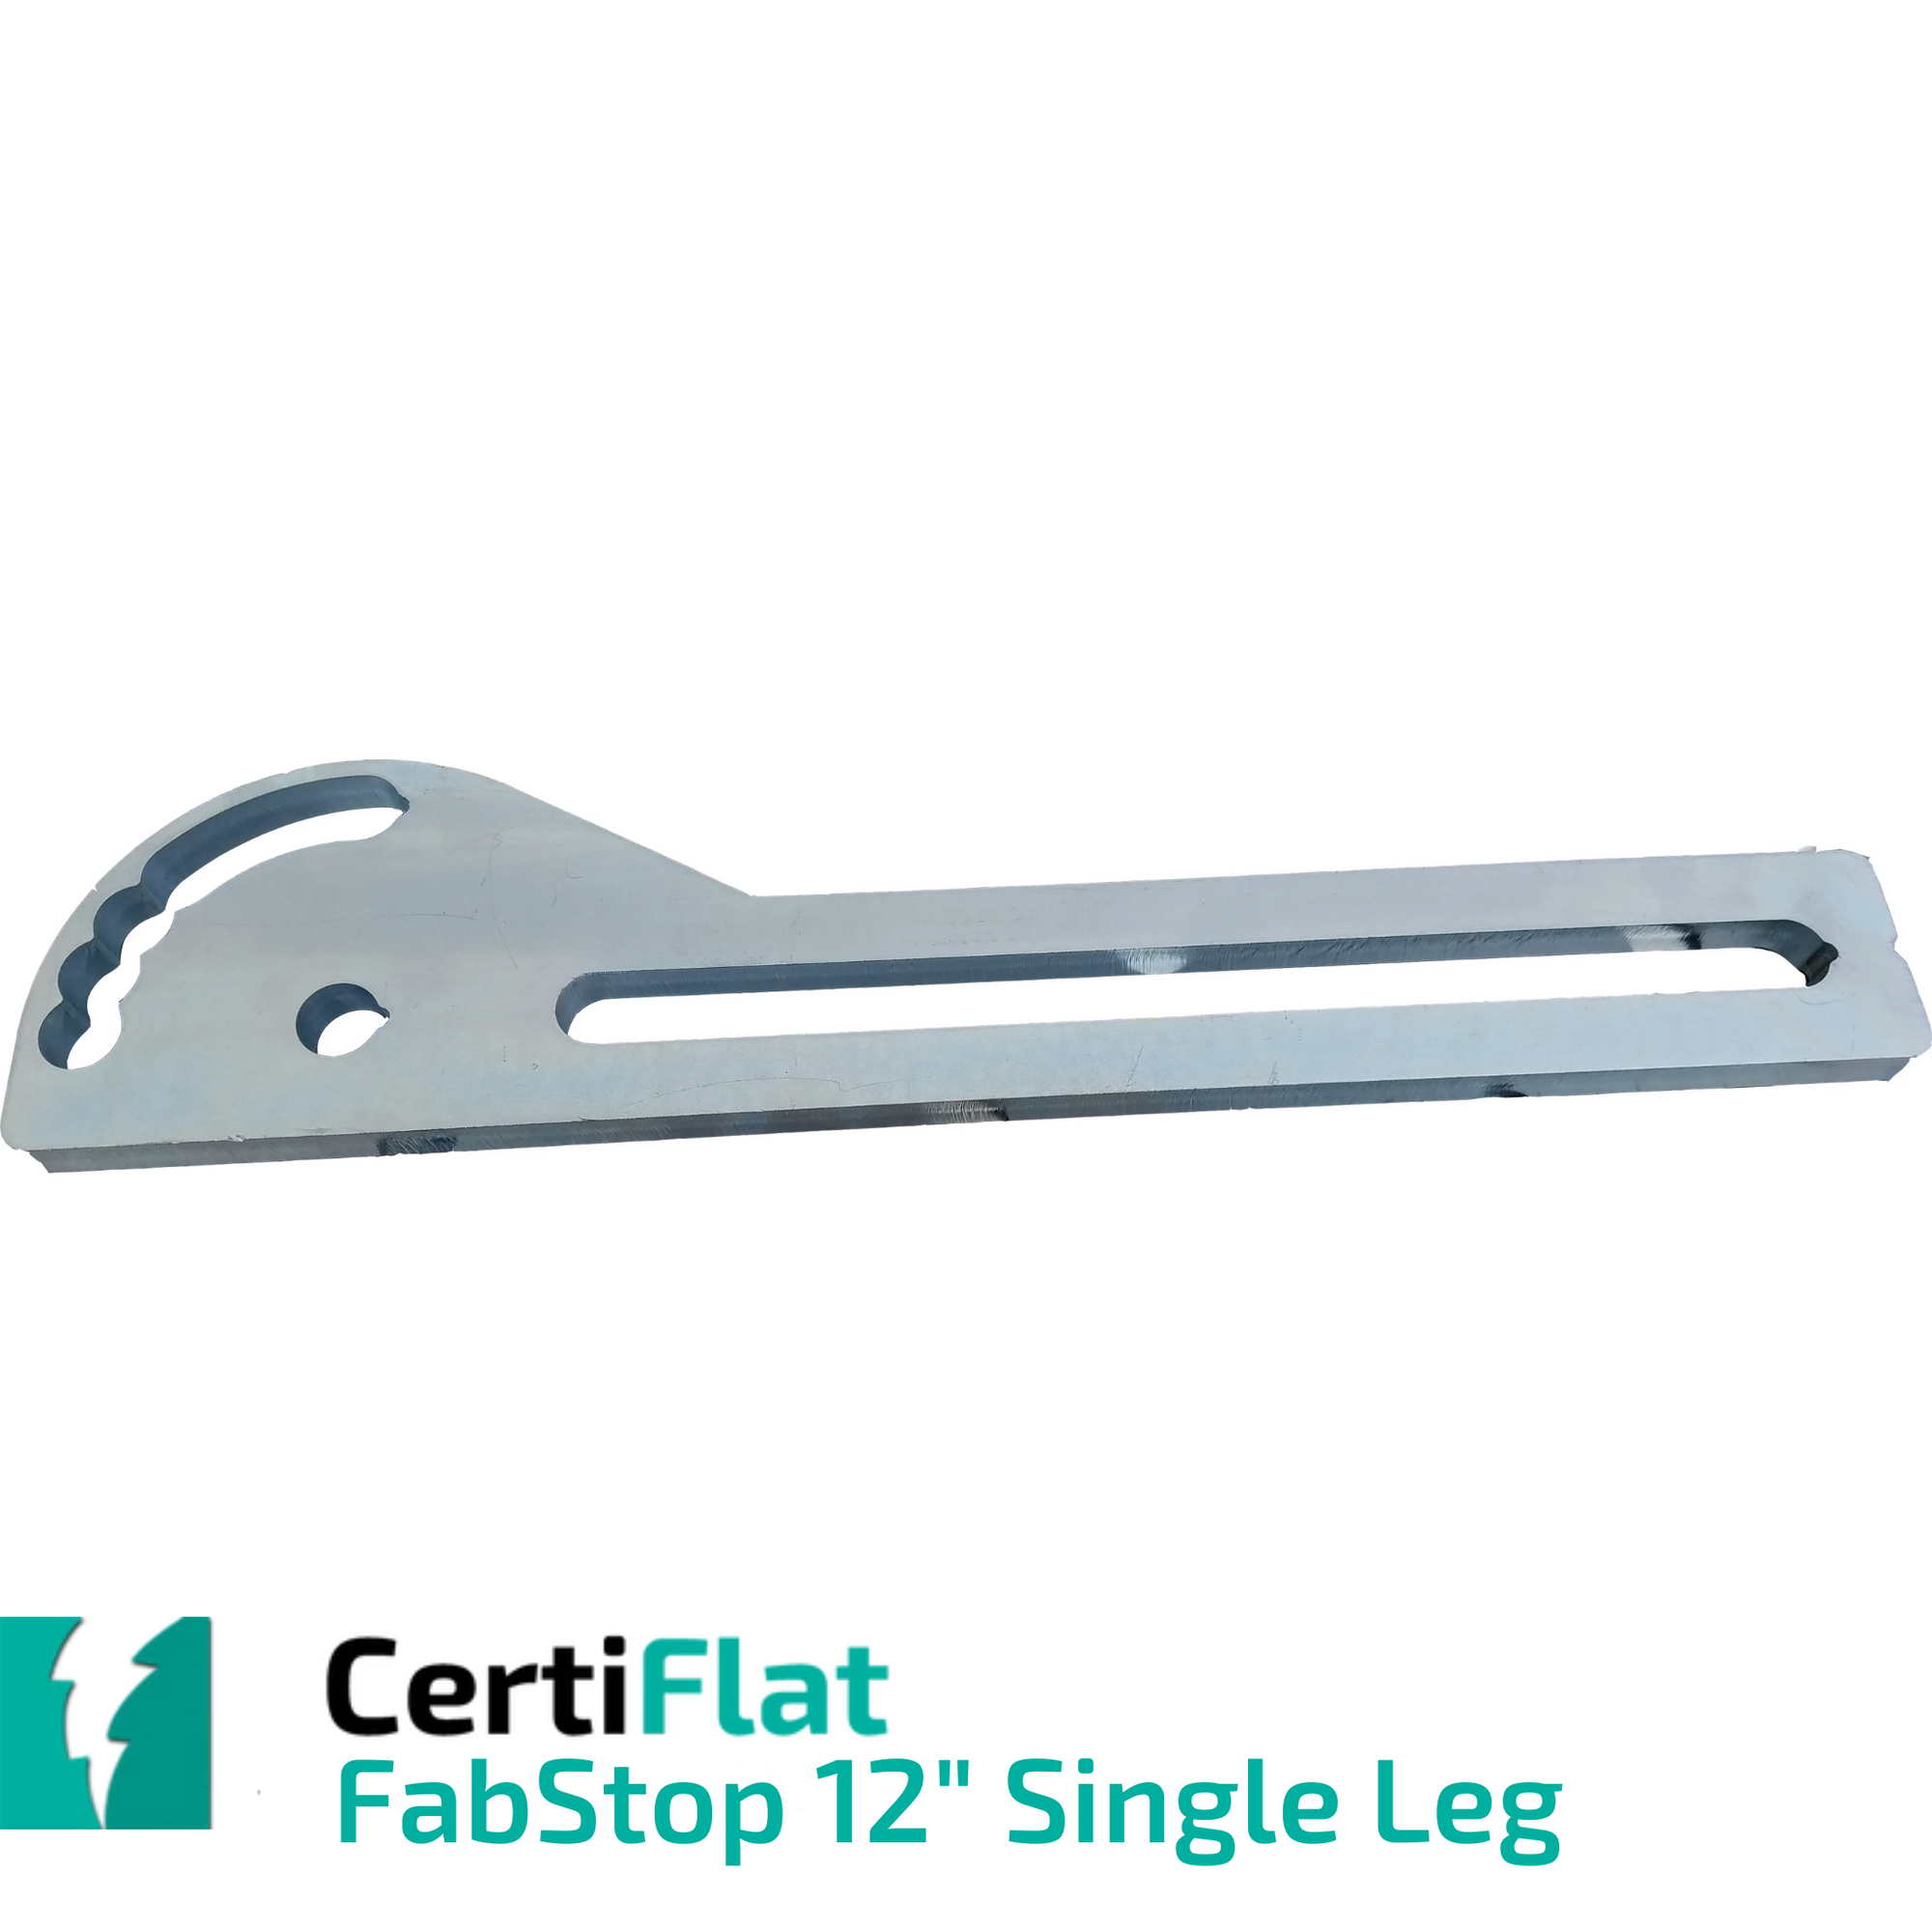 CERTIFLAT 12" SINGLE LEG FABSTOP